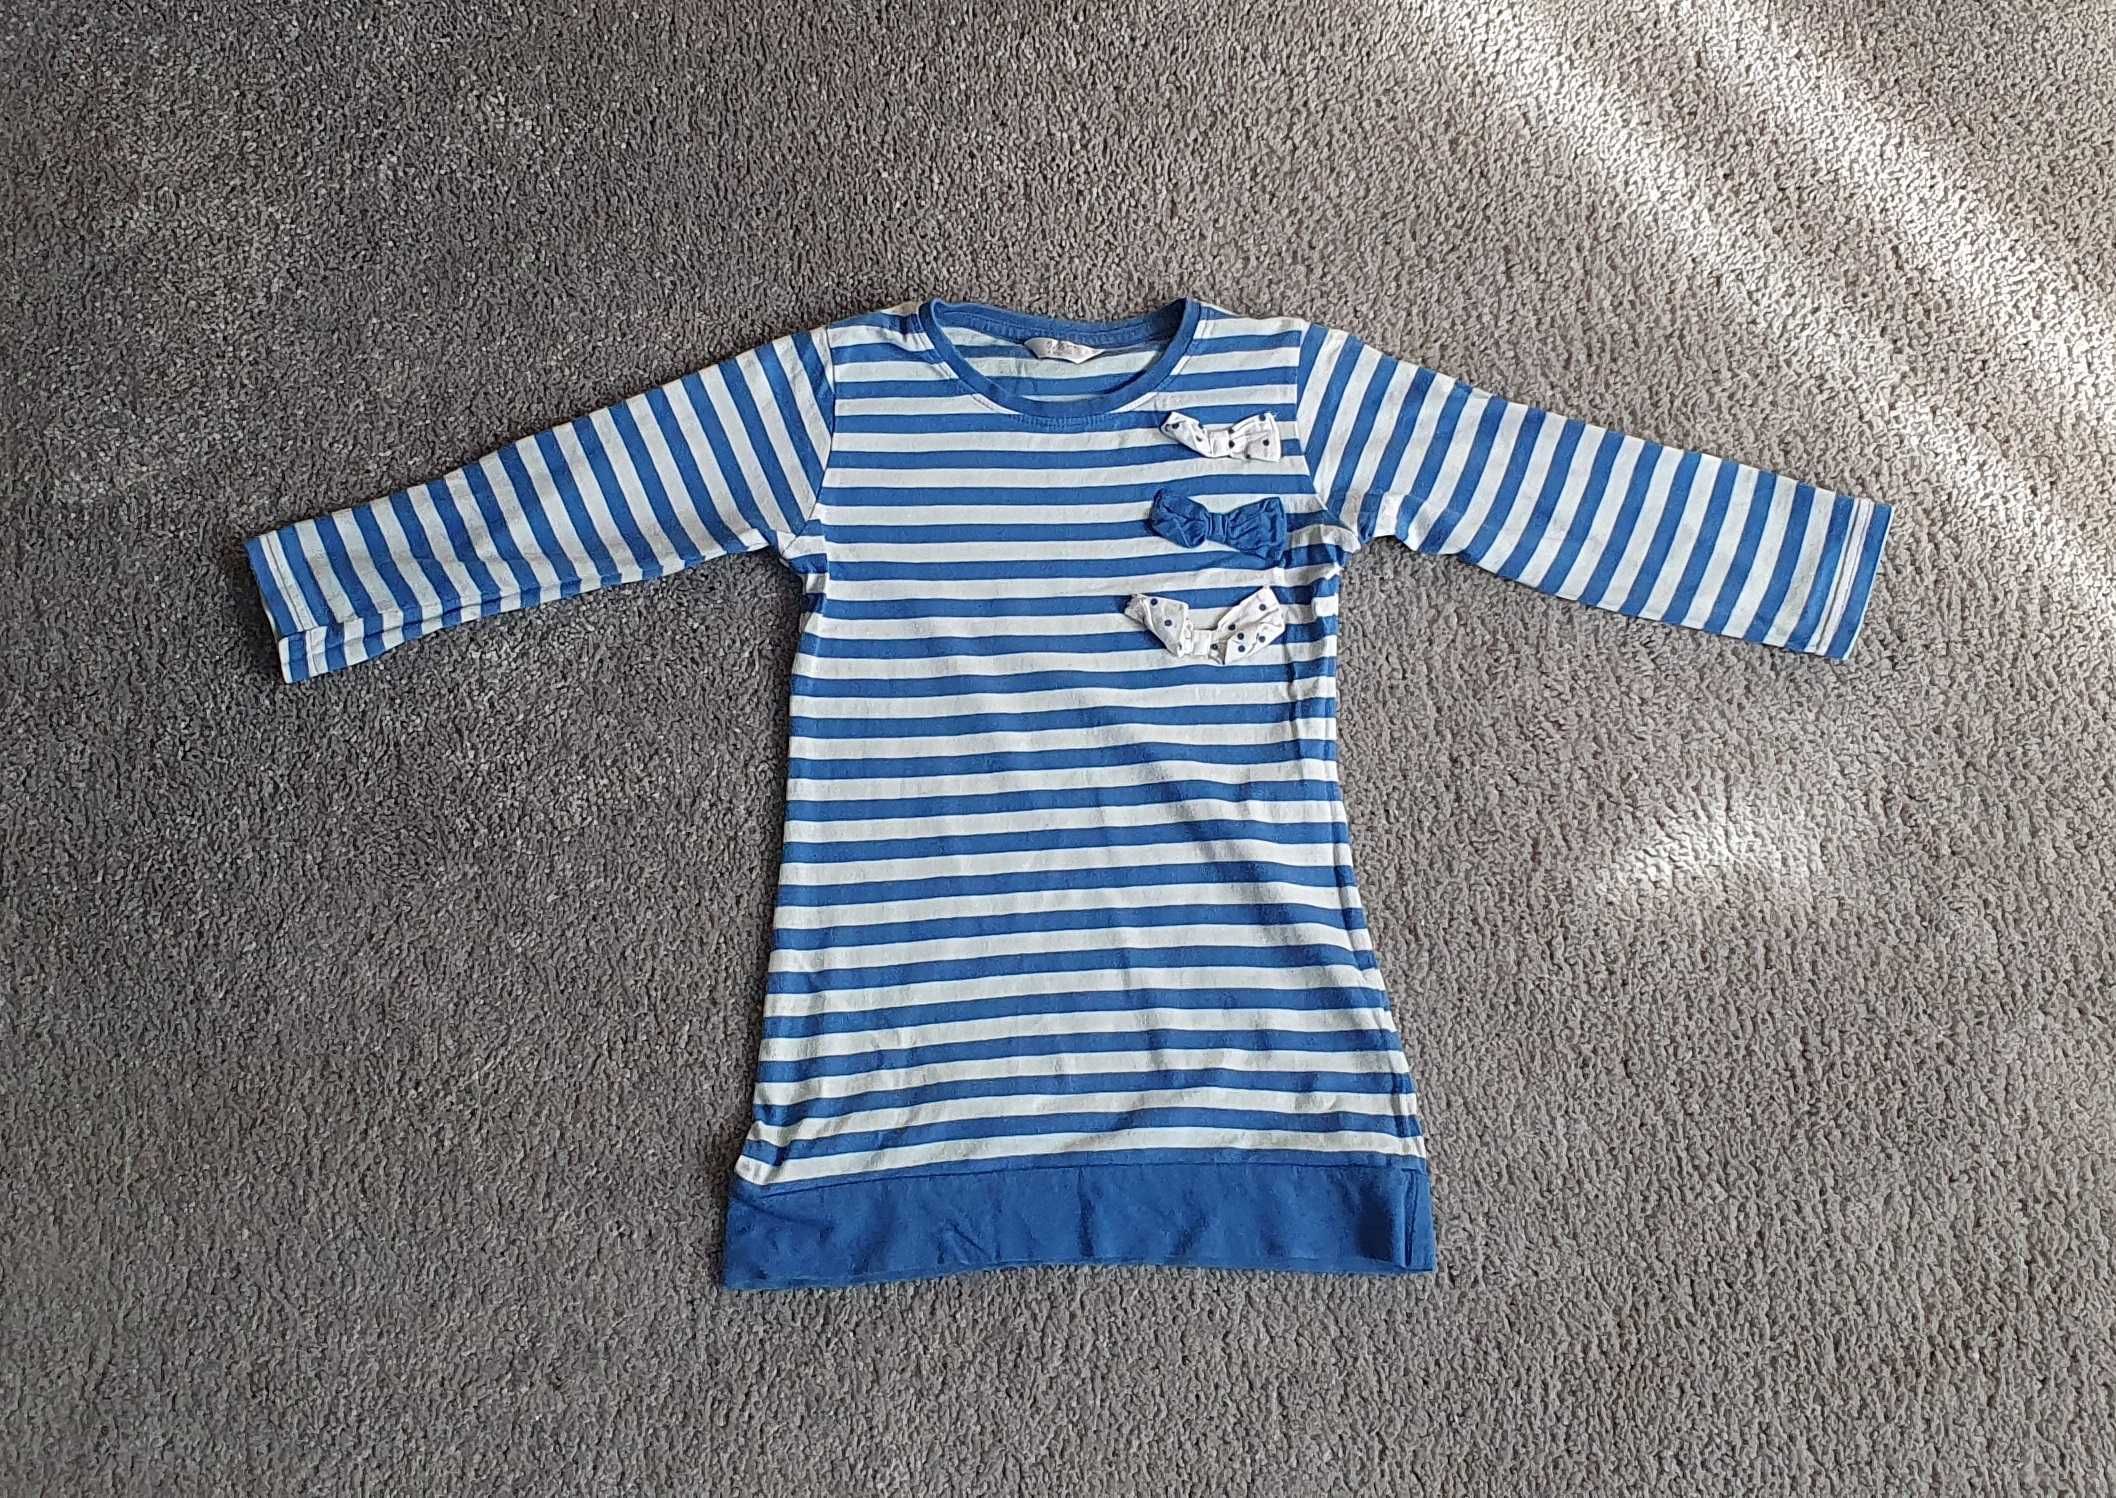 Bluzka Pepco, bluza, rozmiar 116 cm (5 - 6 lat), dziewczęca w paski.